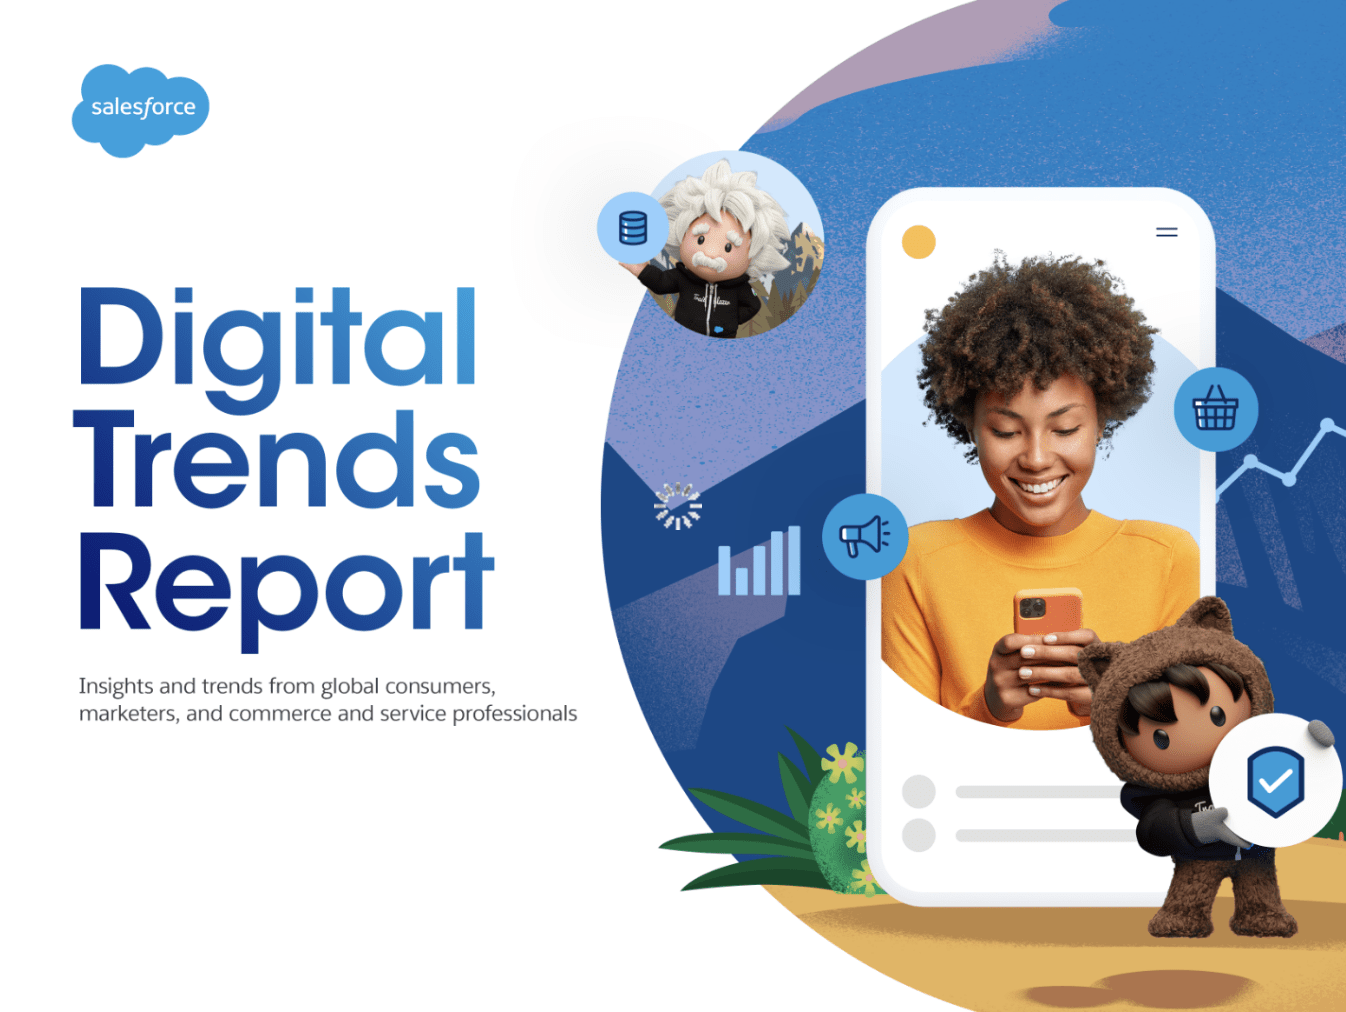 digital trends report - Digital Trends Report